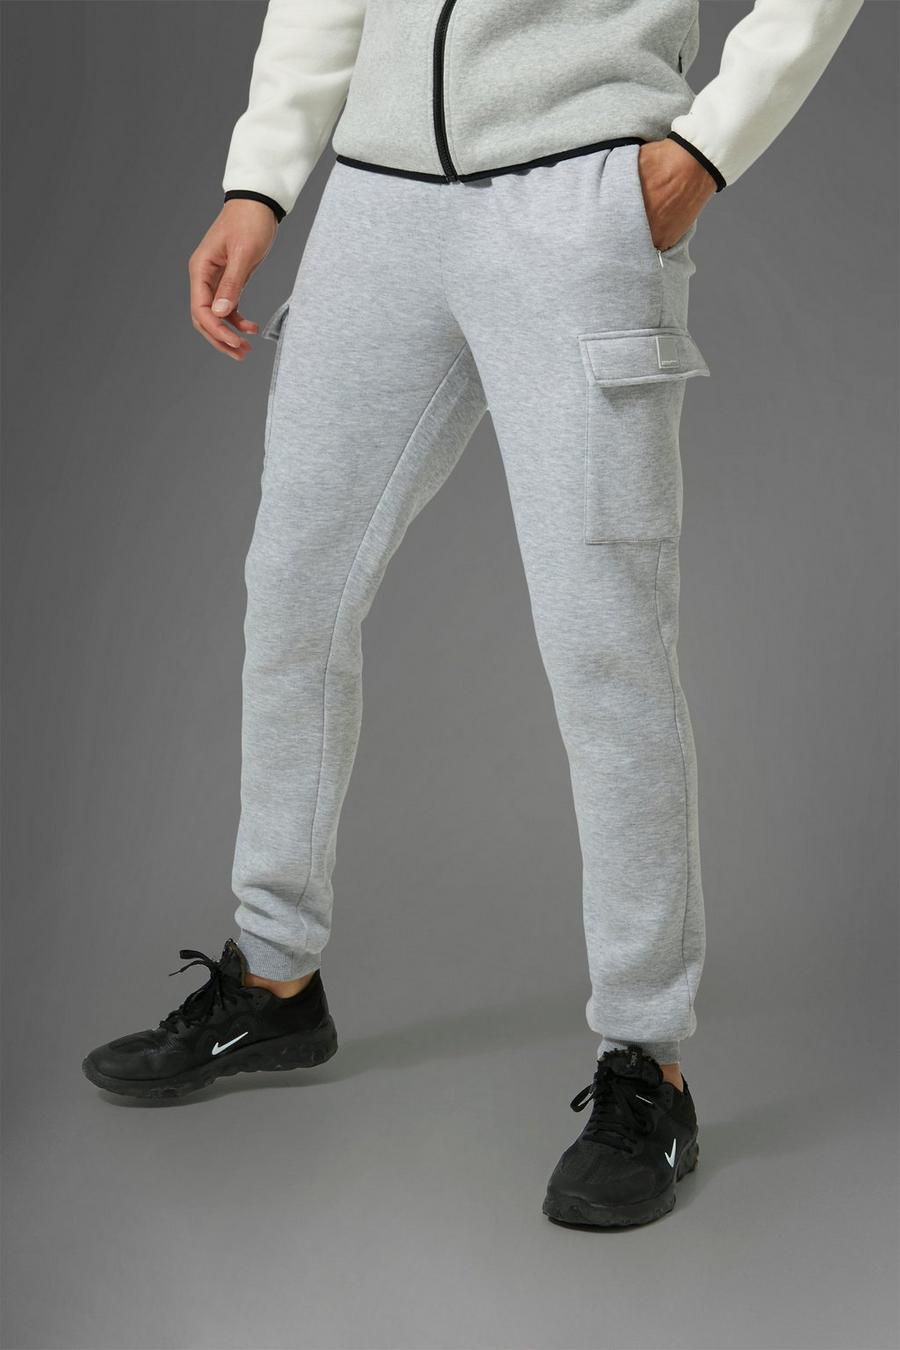 Pantaloni tuta Tall Man Active Gym stile Cargo, Grey marl gris image number 1